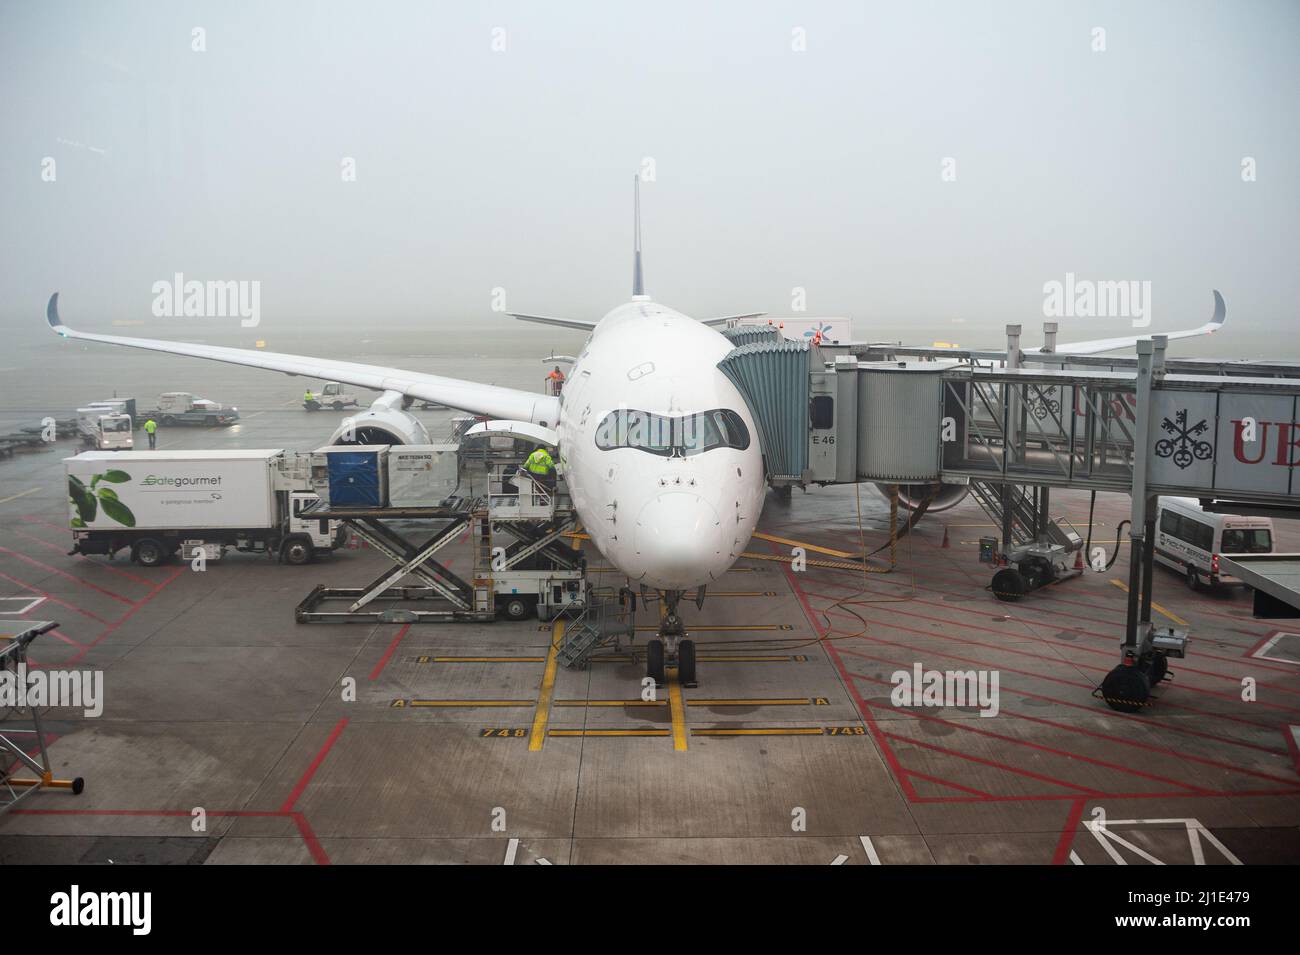 14.12.2021, Svizzera, Zurigo - Un Airbus Singapore Airlines A350-900 parchi aerei passeggeri in posizione stand presso il terminal Dock e di Zurigo airp Foto Stock